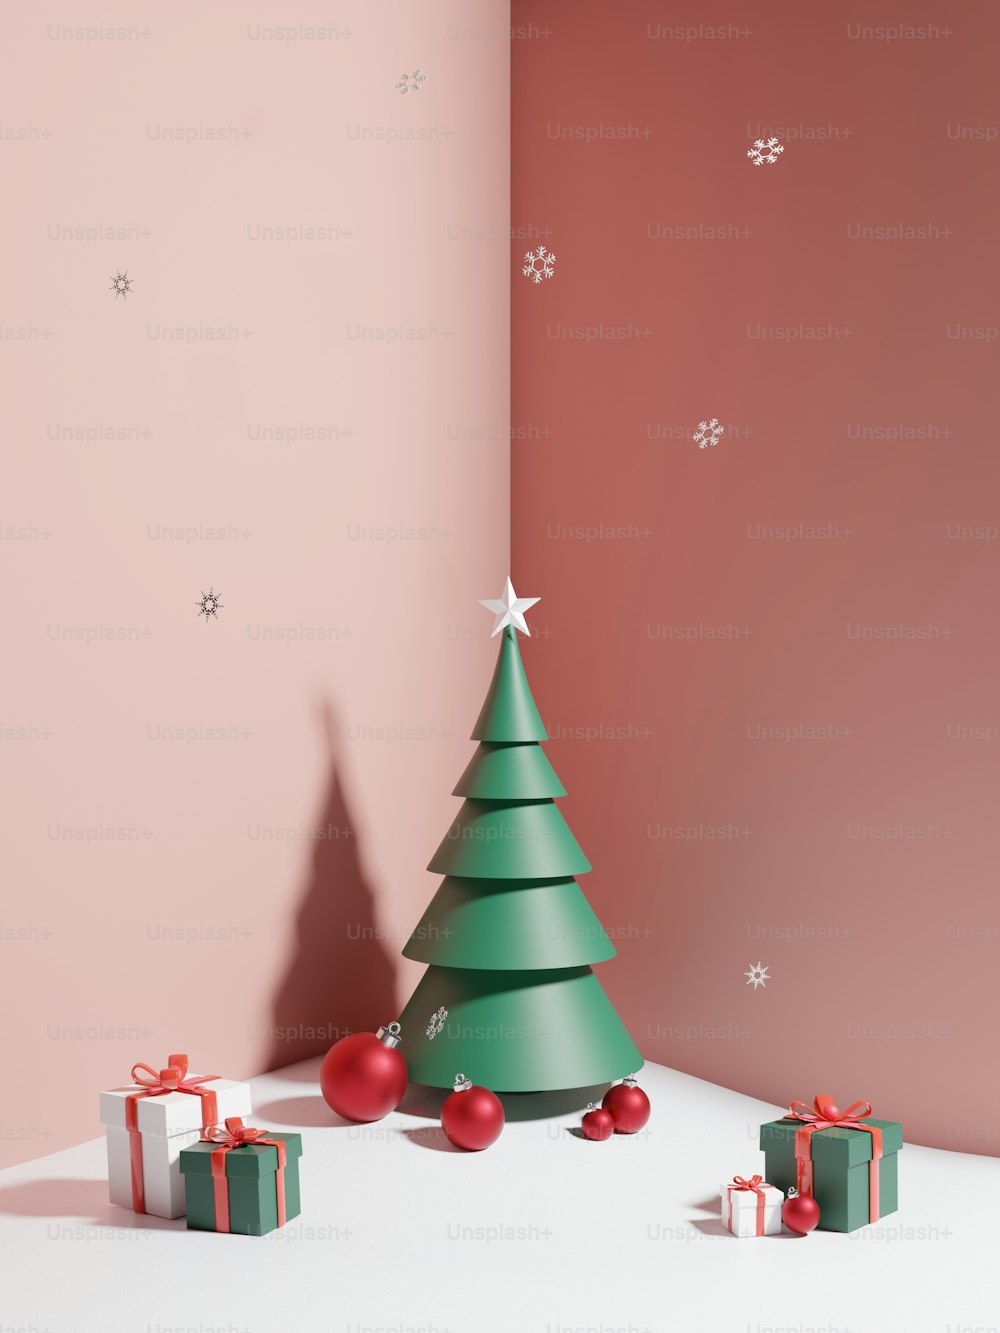 Un árbol de Navidad verde rodeado de regalos